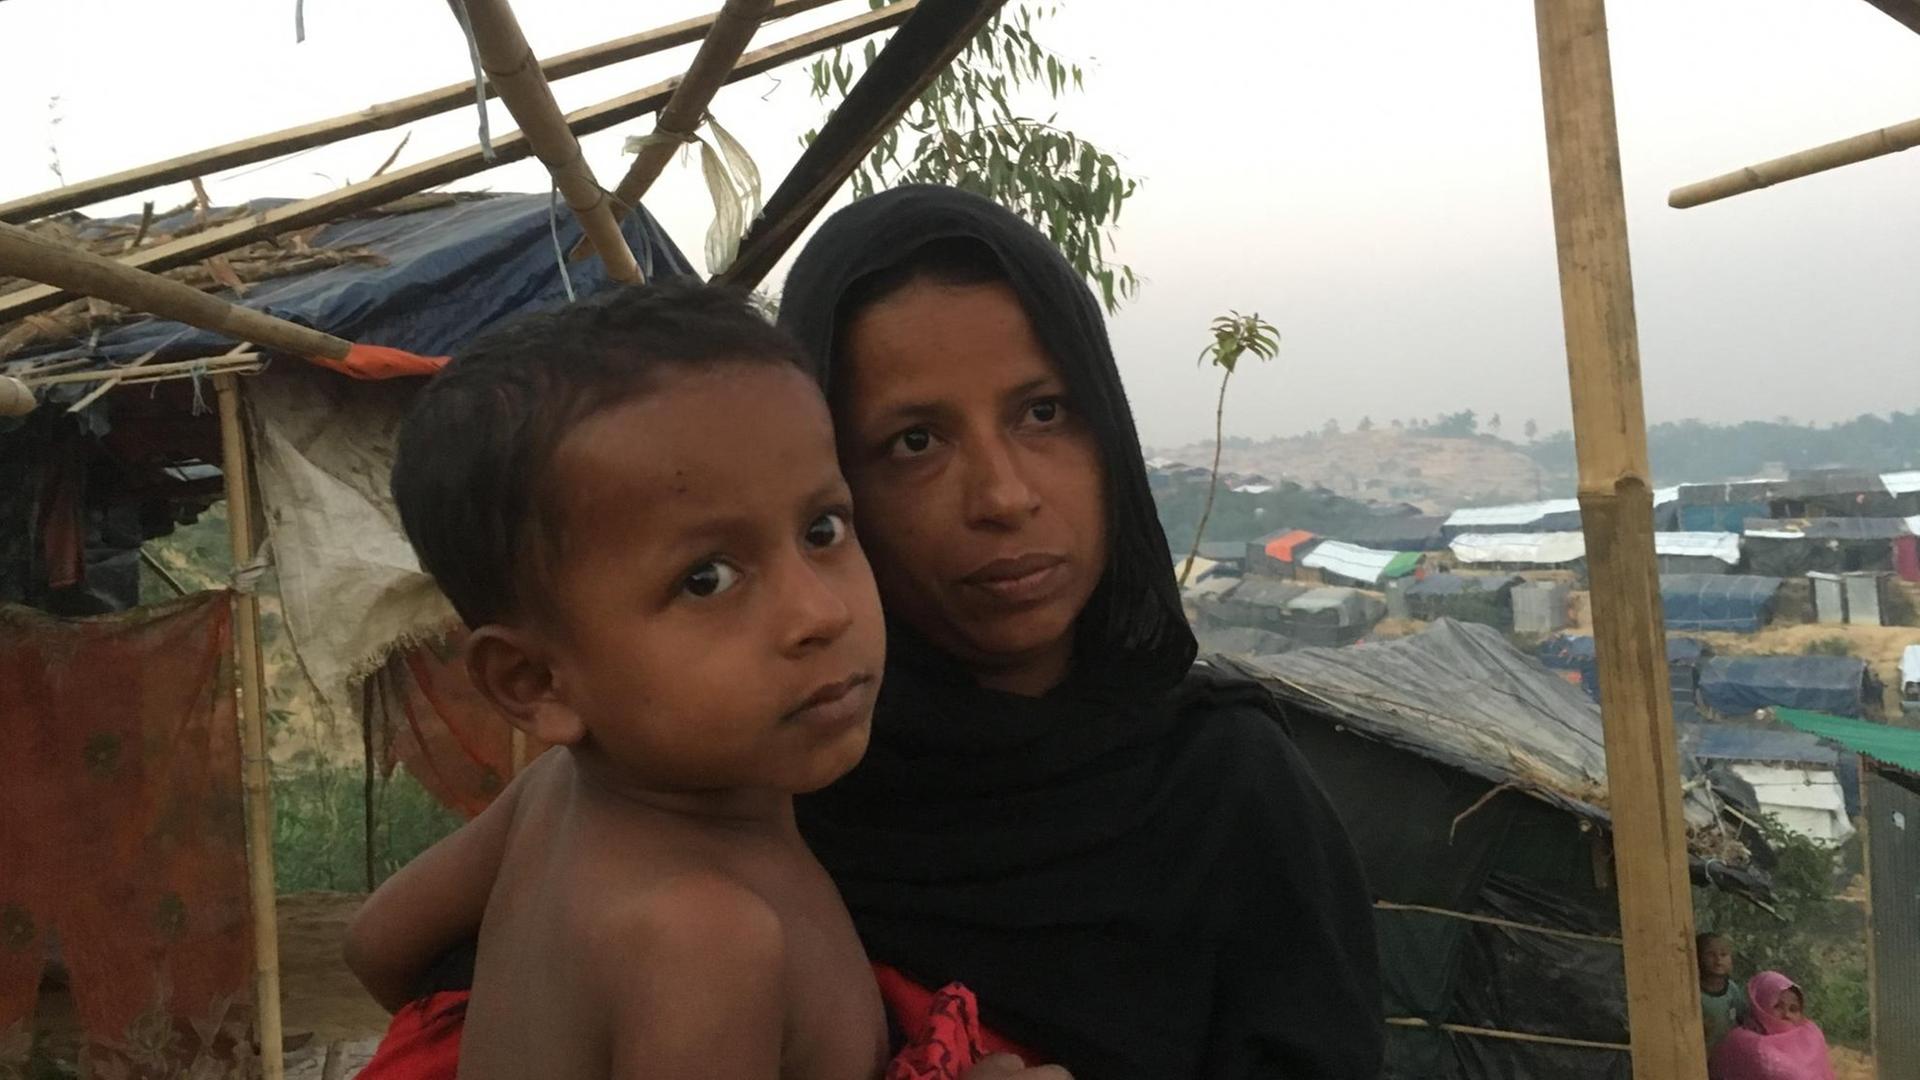 Rund 60 Flüchtlinge, Rohingya aus Myanmar, warten in dem Dörfchen Sabrang unter einem provisorischen Unterstand, unter ihnen viele Kinder und Frauen, ein paar junge Männer. Diese junge Frau ist mit ihren Kindern geflohen nachdem ir Ehemann ermordet wurde. Üerprüfen können wir ihre Geschichte nicht. Webermann, Dezember 2017